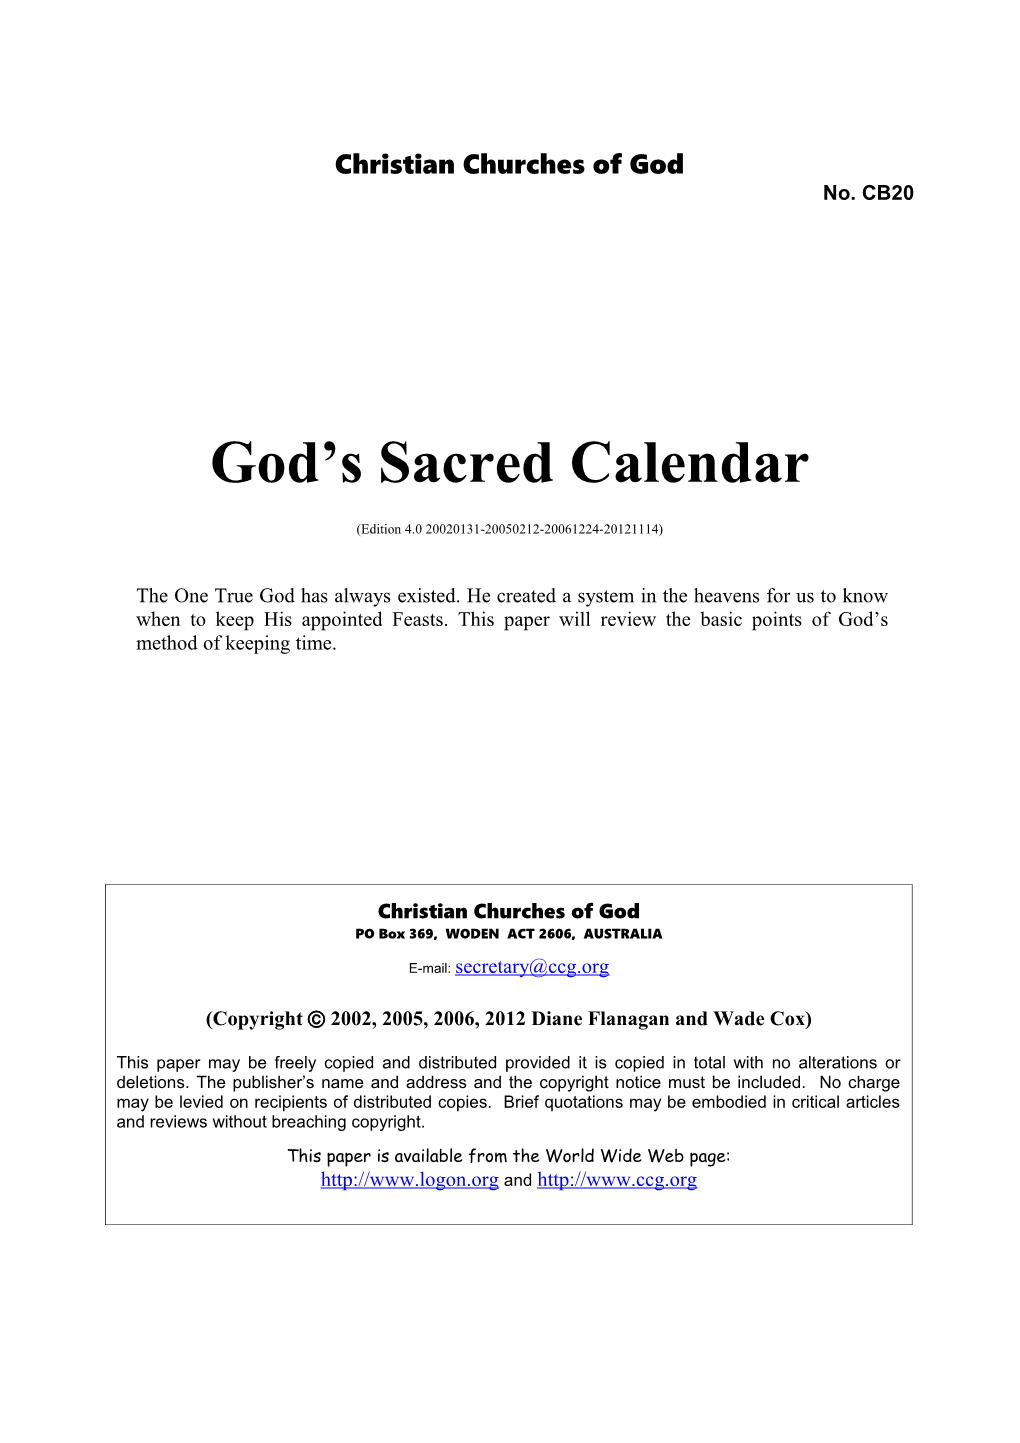 God's Sacred Calendar (No. CB20)